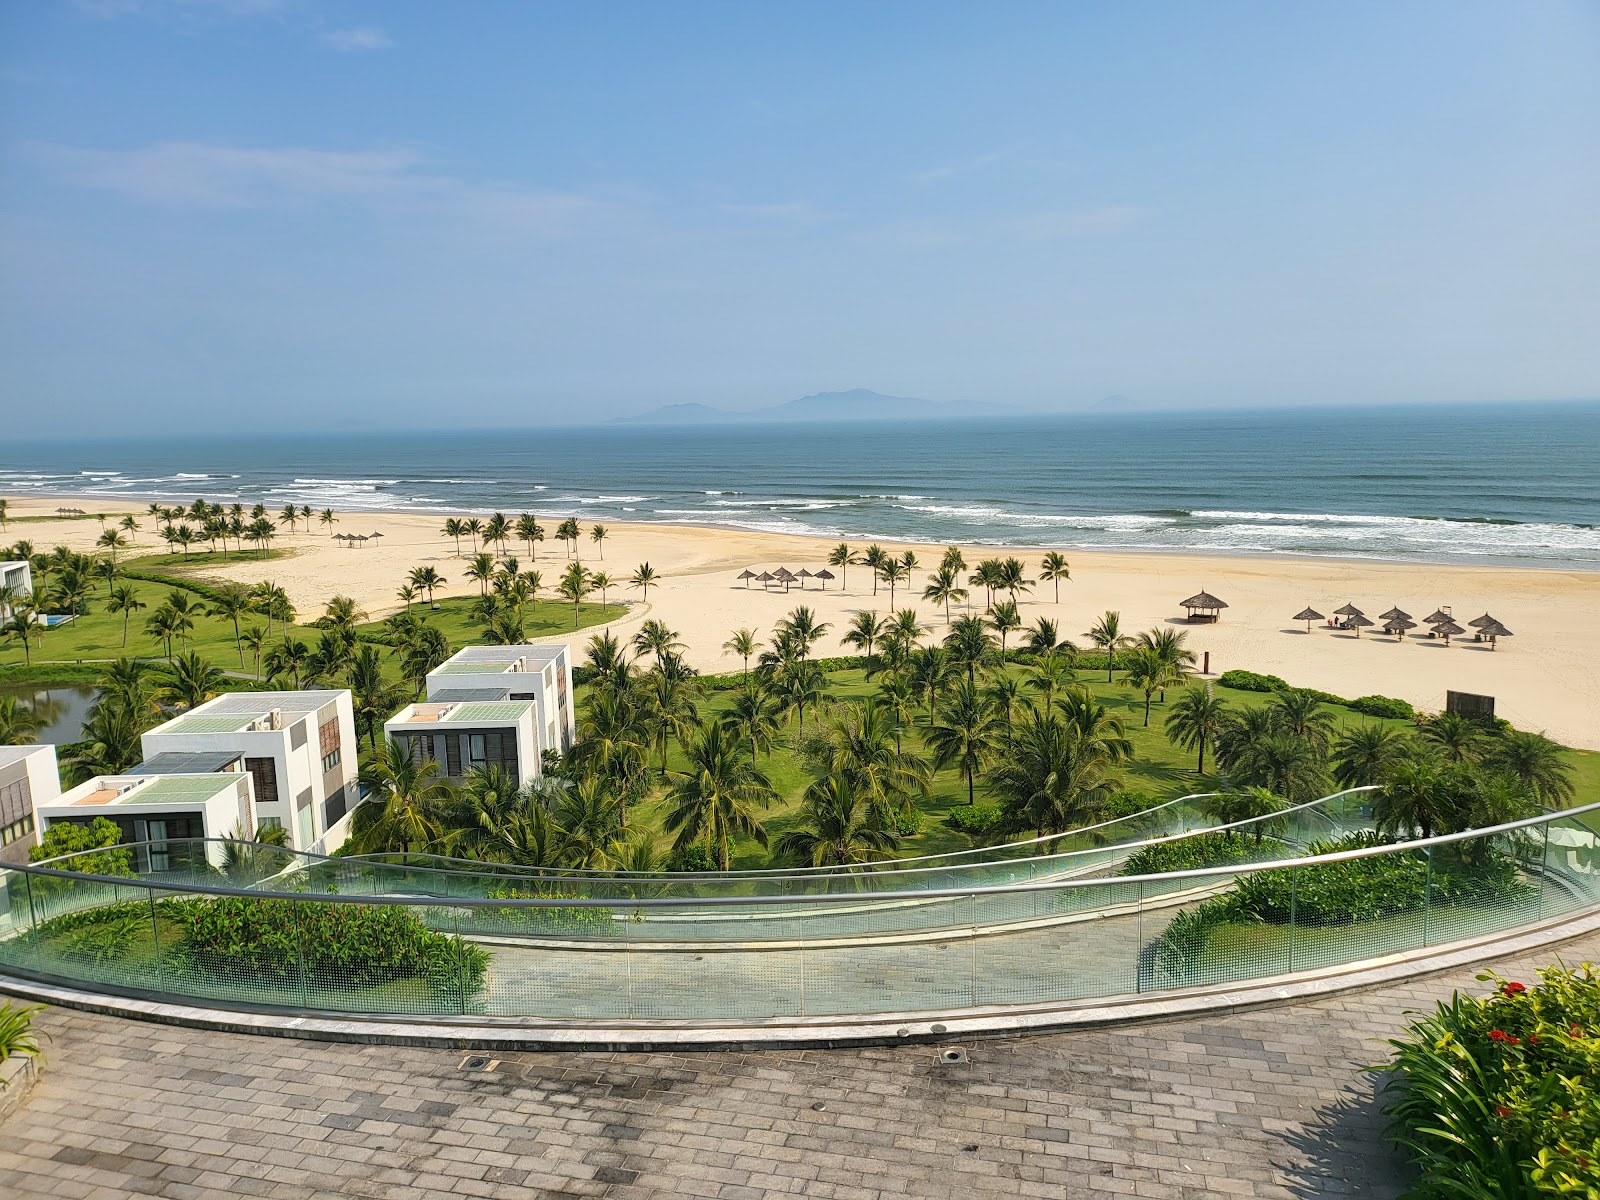 Foto af Thang Binh Beach - populært sted blandt afslapningskendere